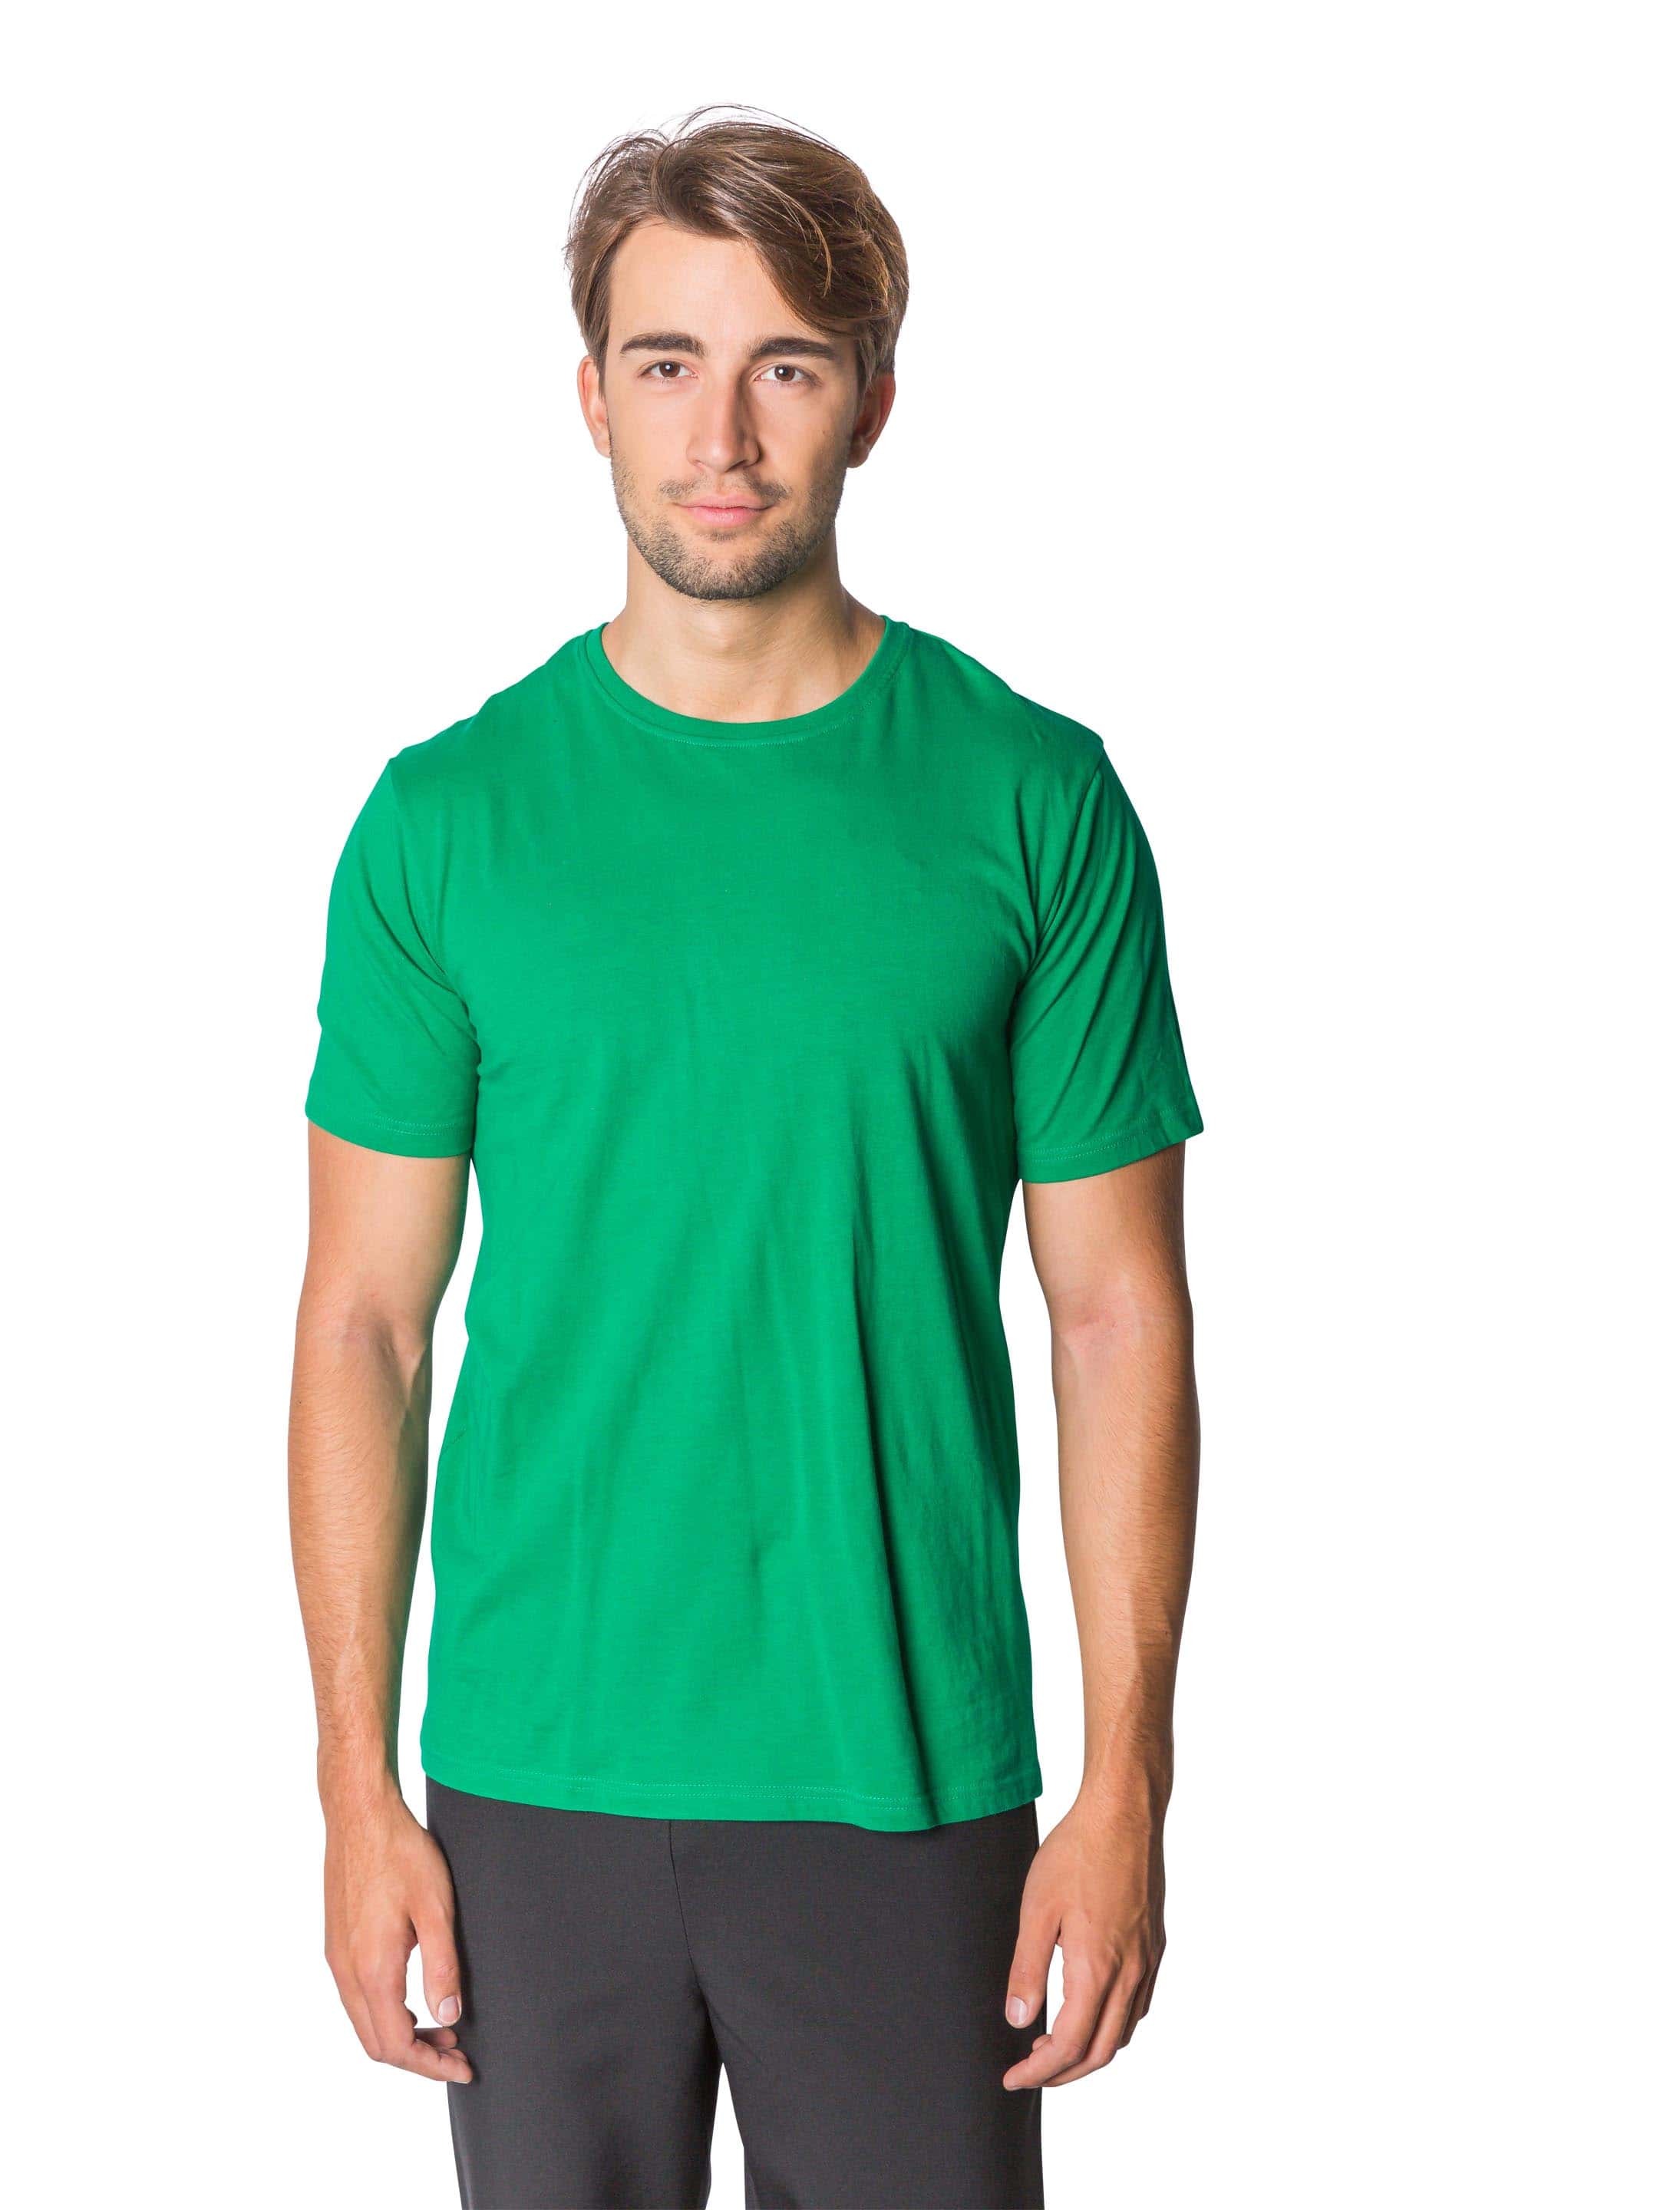 T-Shirt Herren grün S